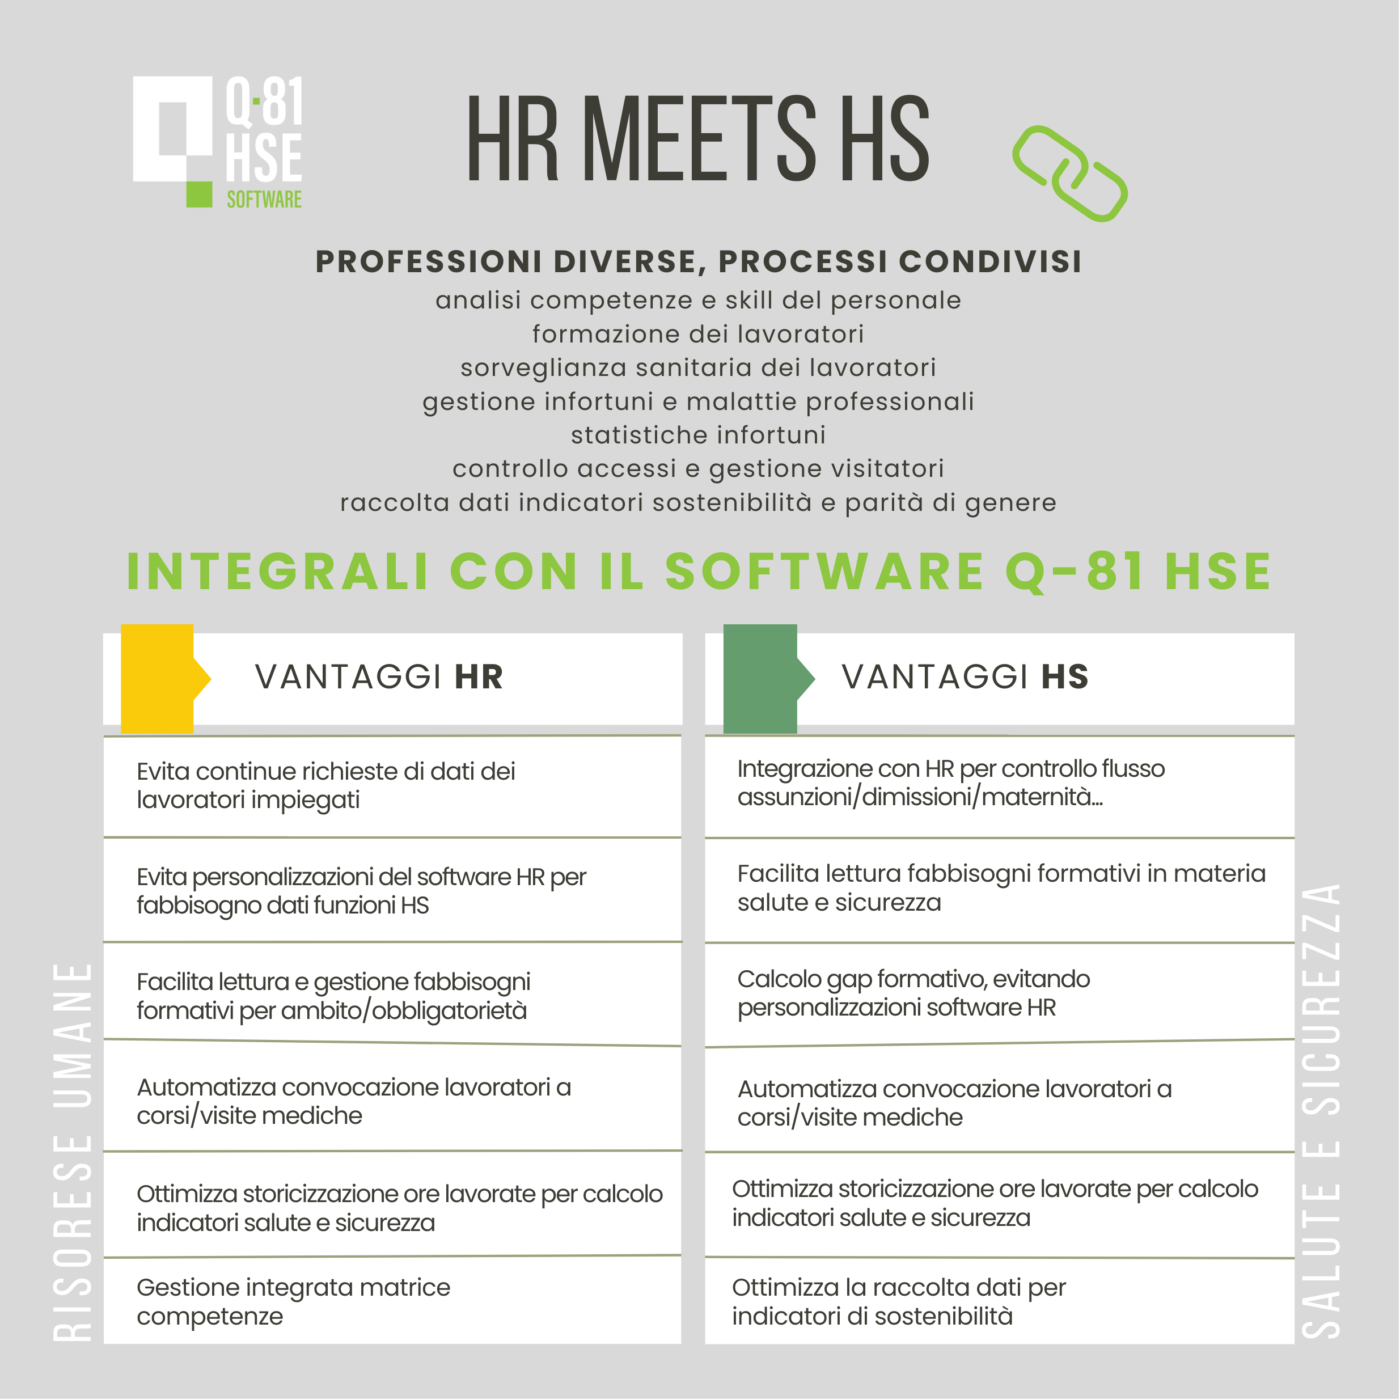 HR meets HS